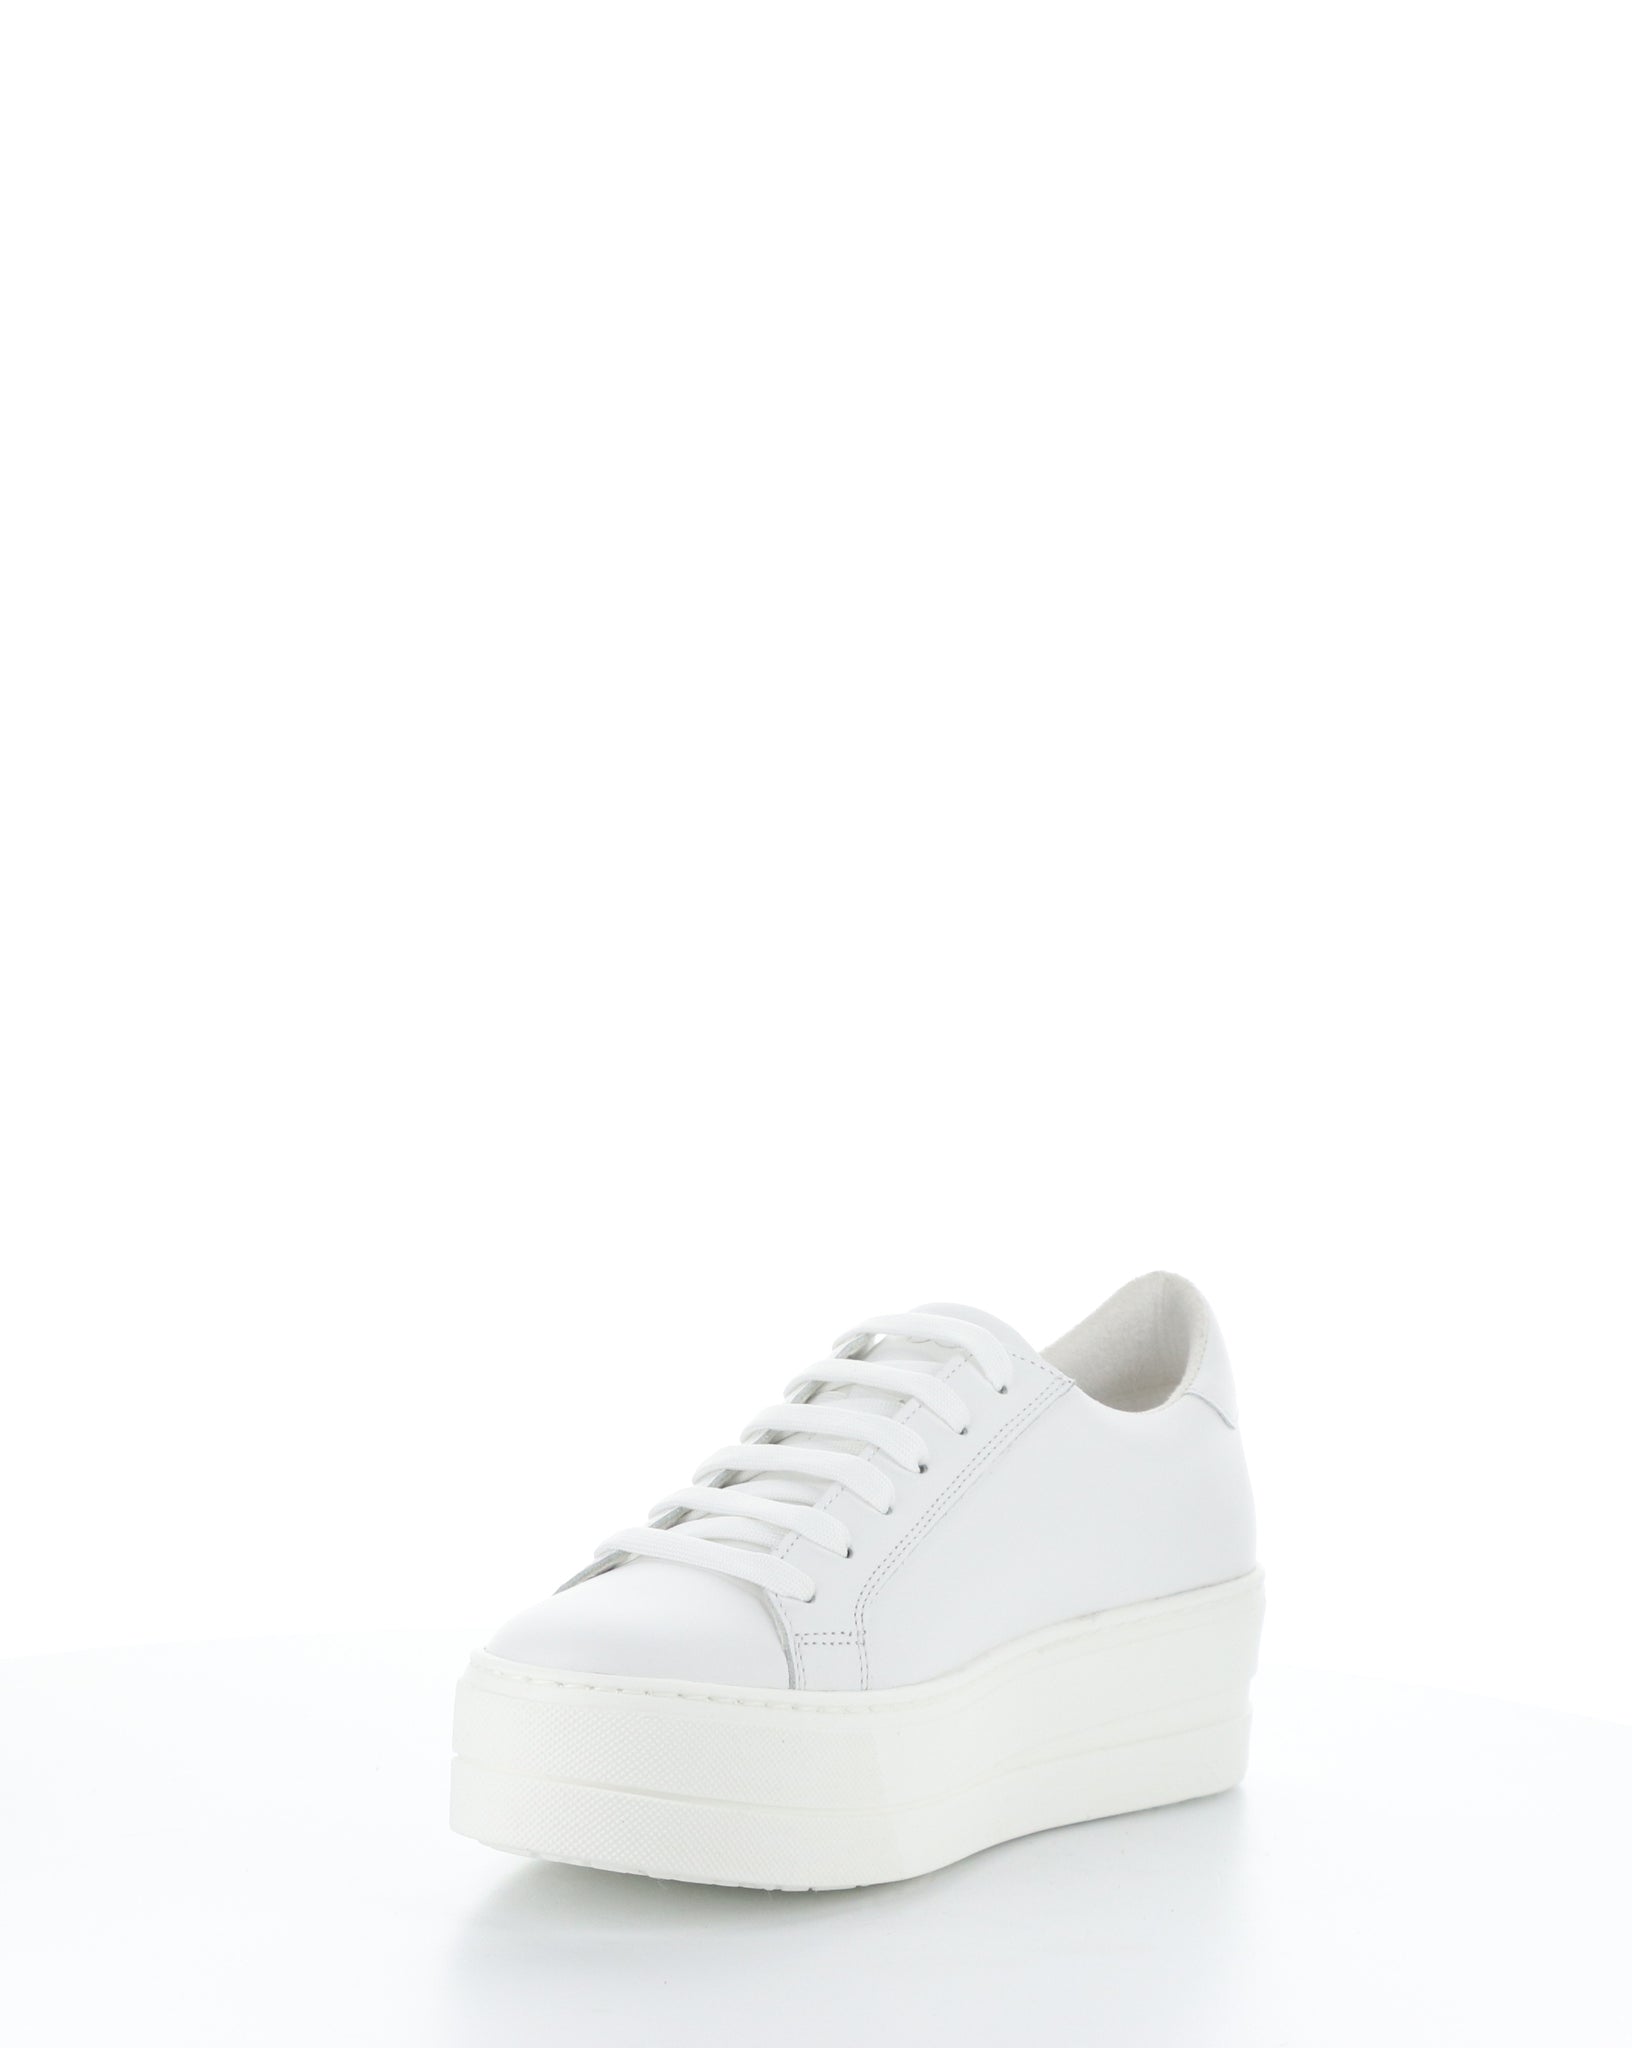 Bos & Co "Maya" White flatform sneaker